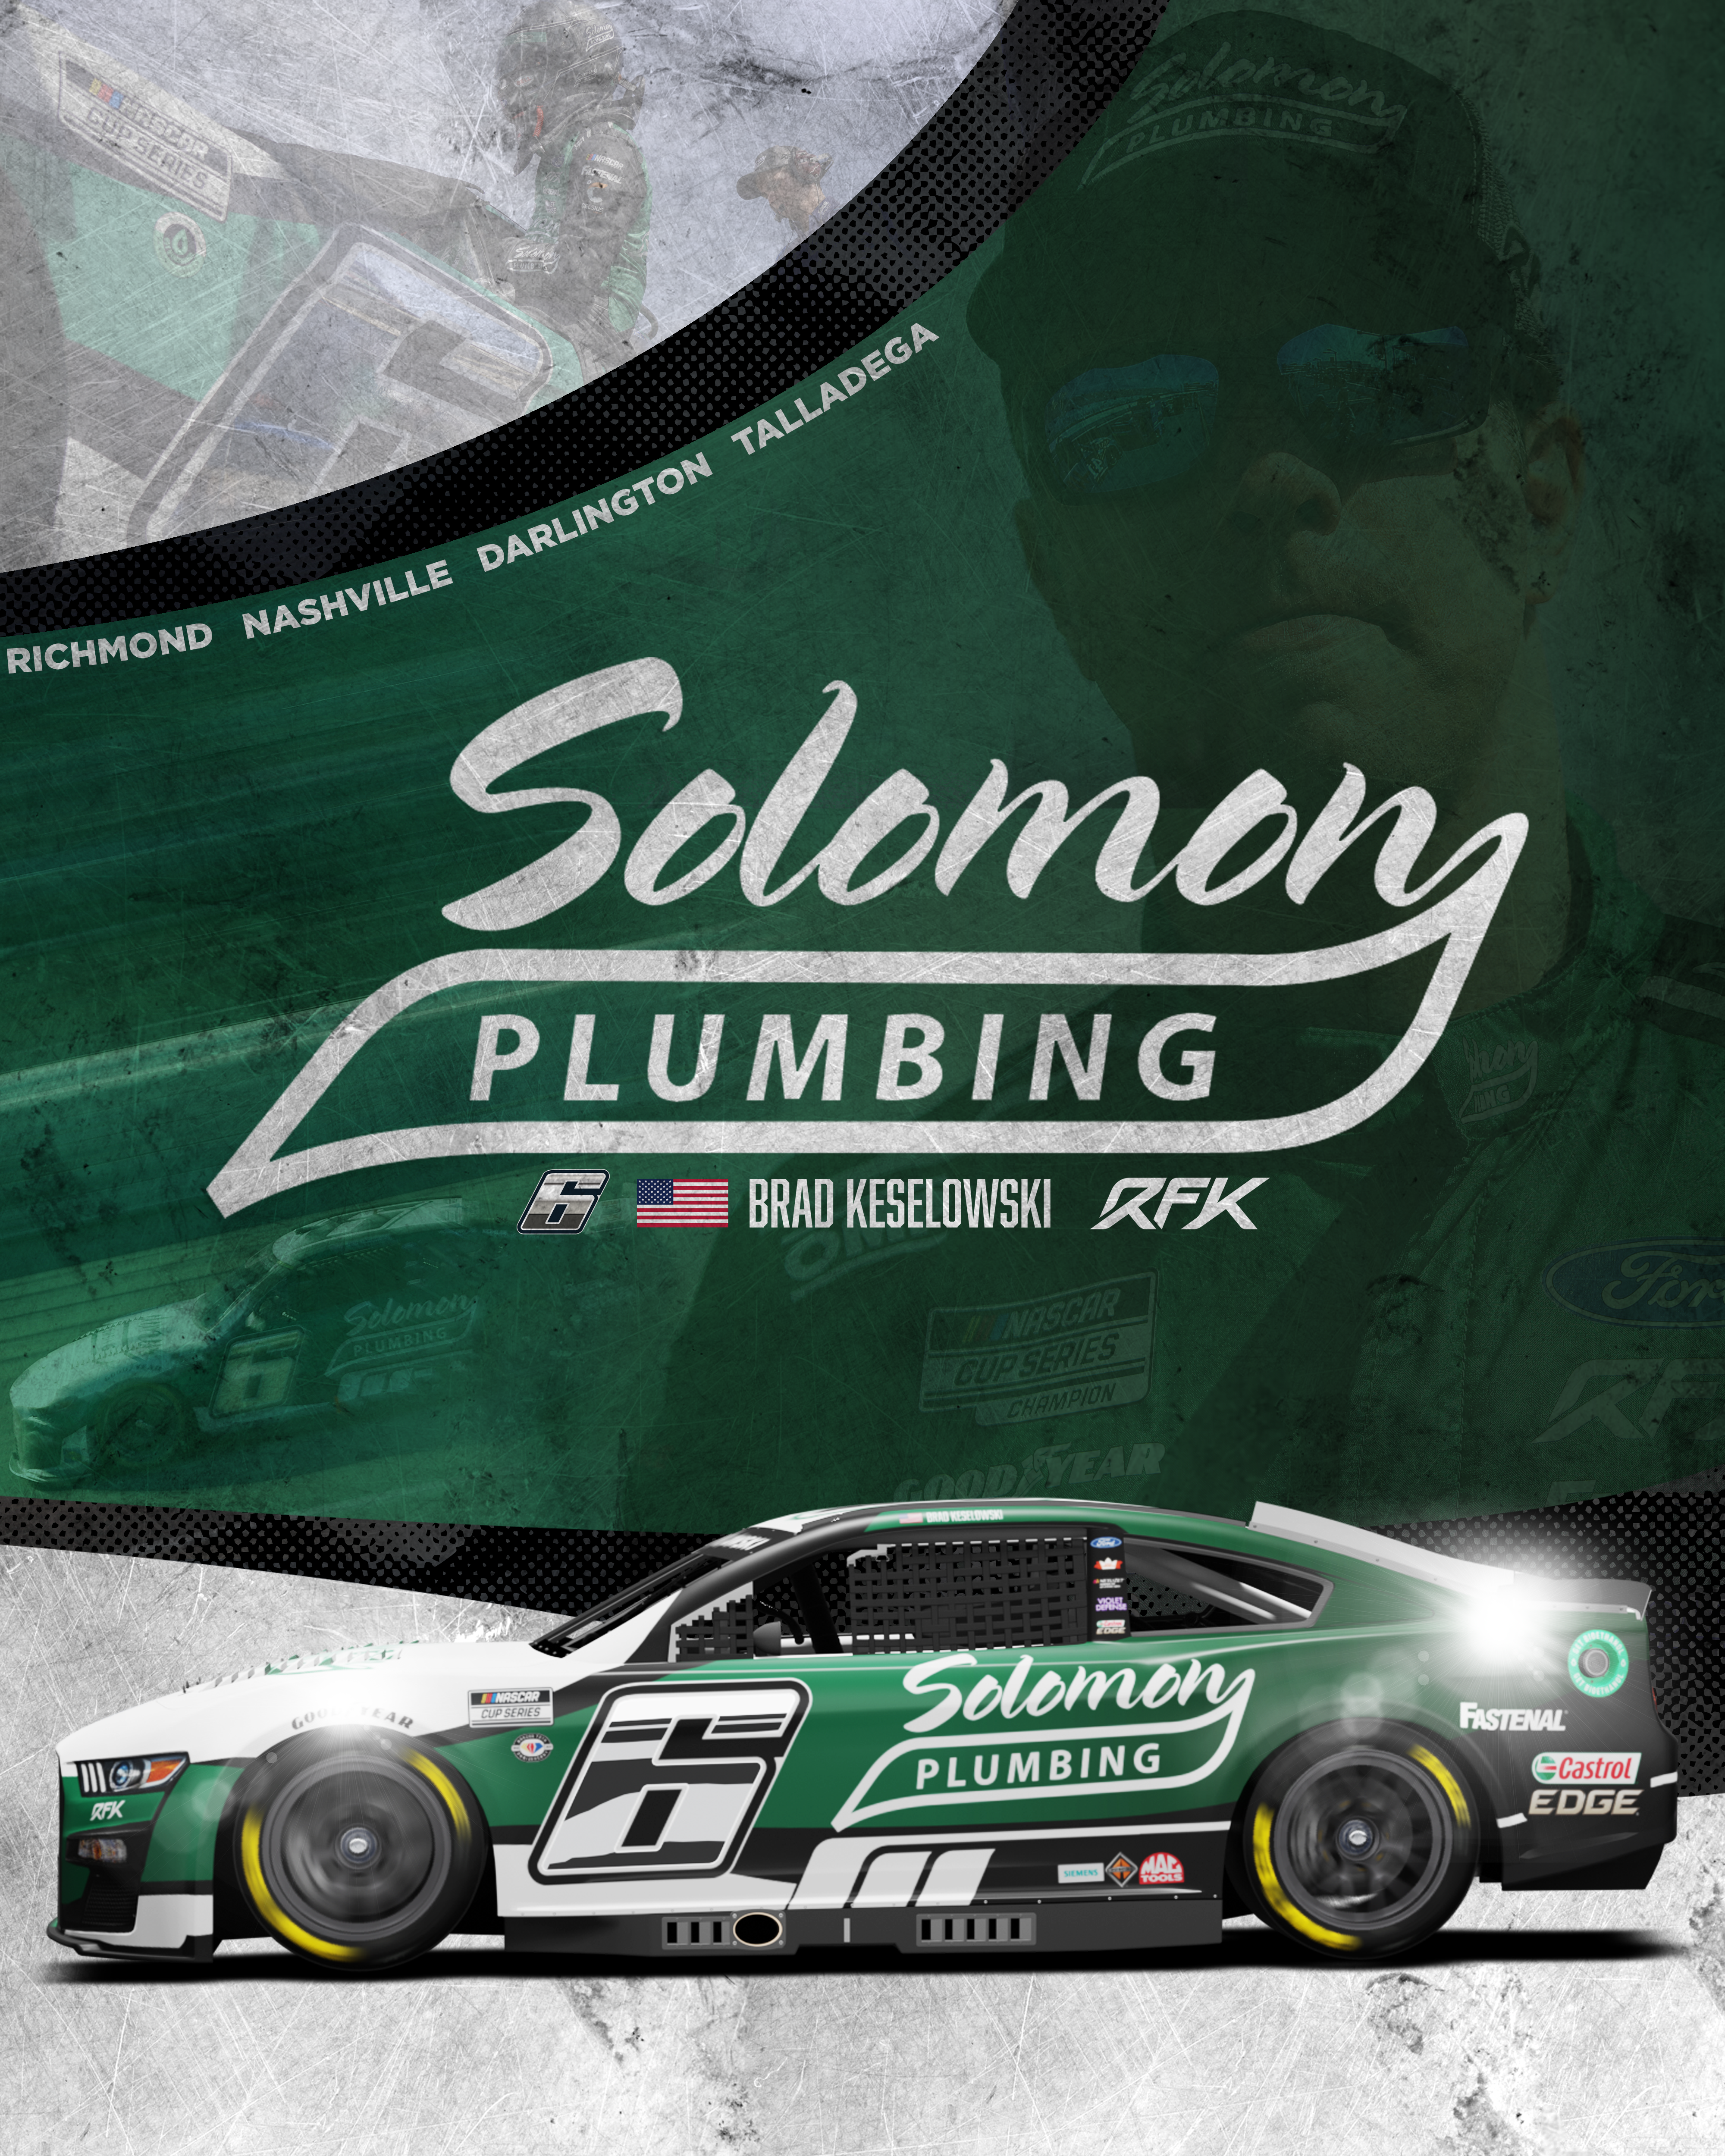 RFK Racing, Solomon Plumbing Announce Partnership Renewal